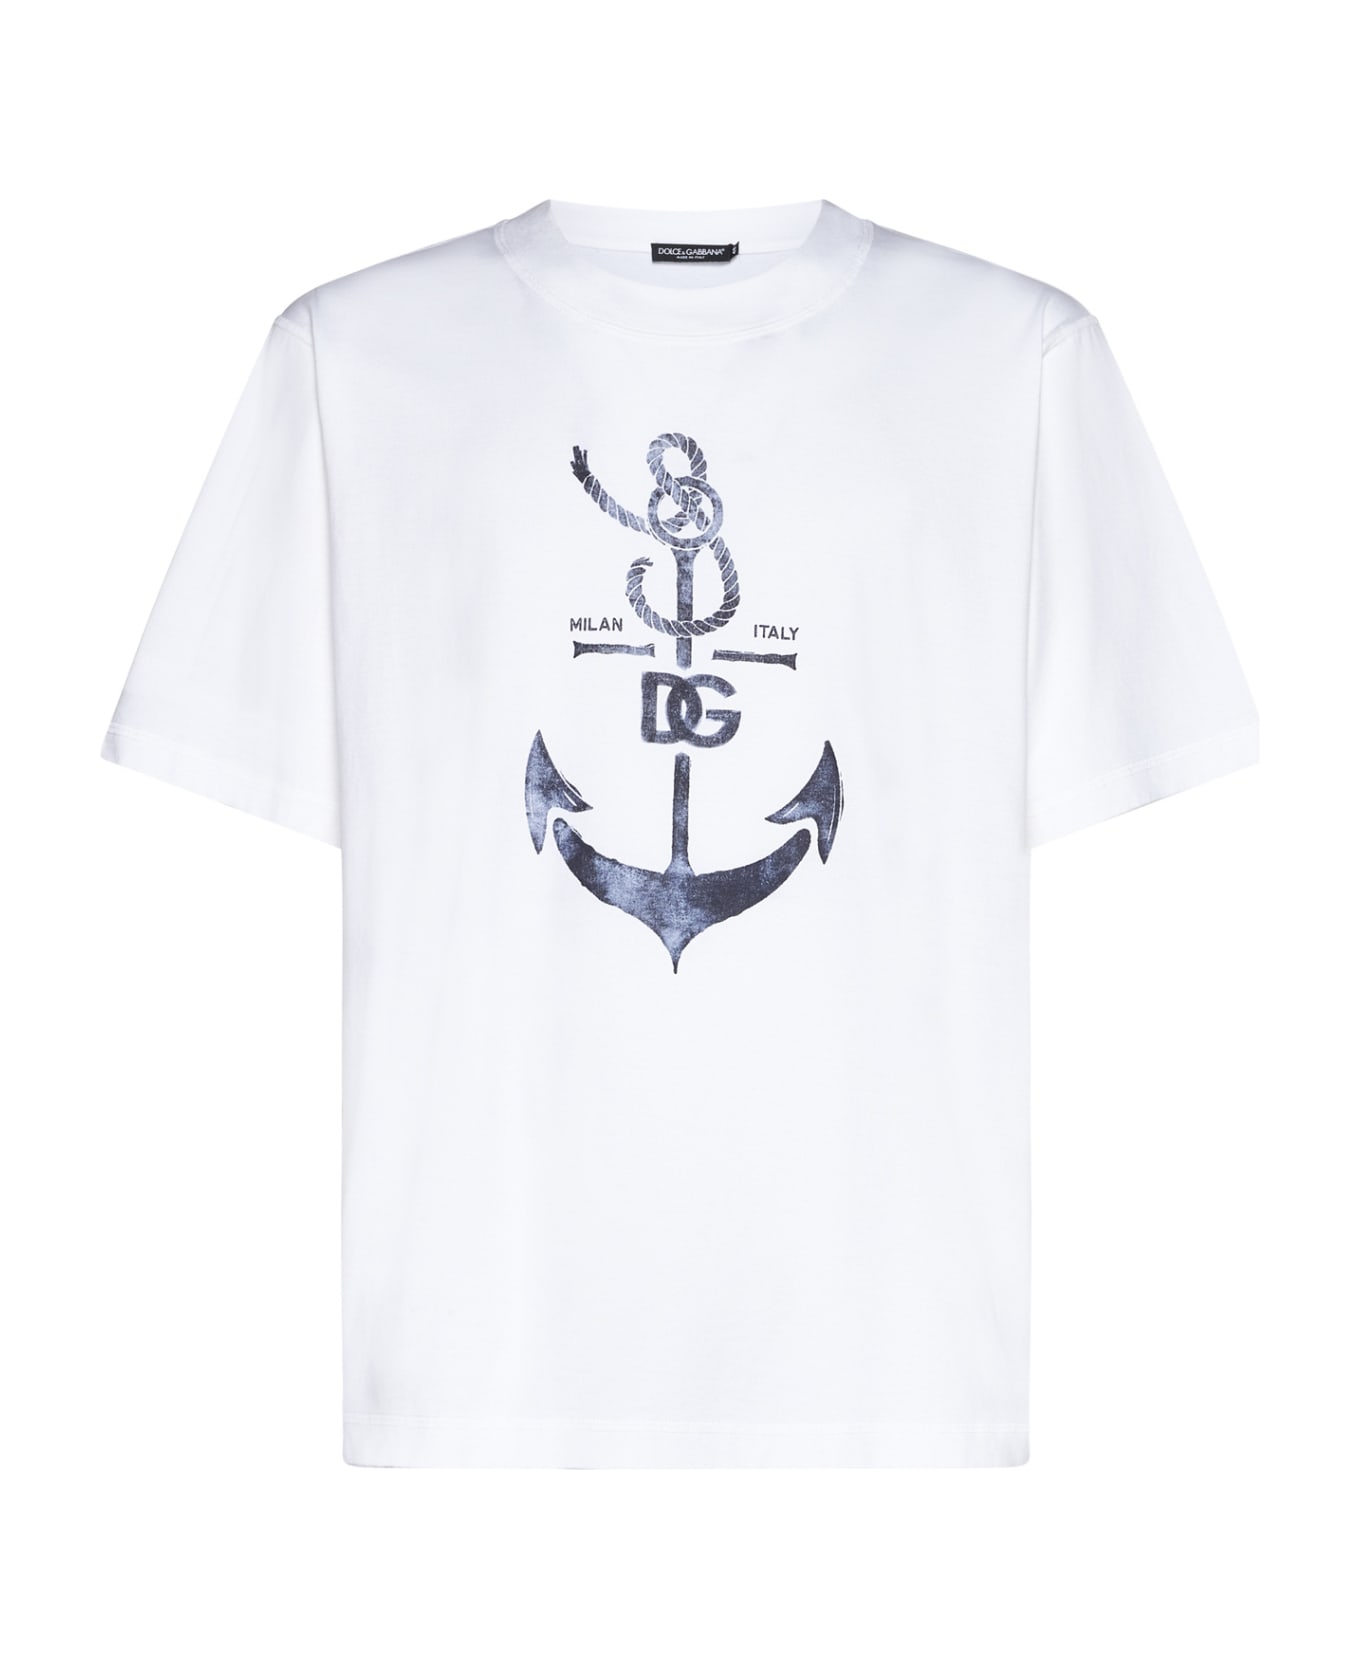 Dolce & Gabbana Marina Print T-shirt - White シャツ